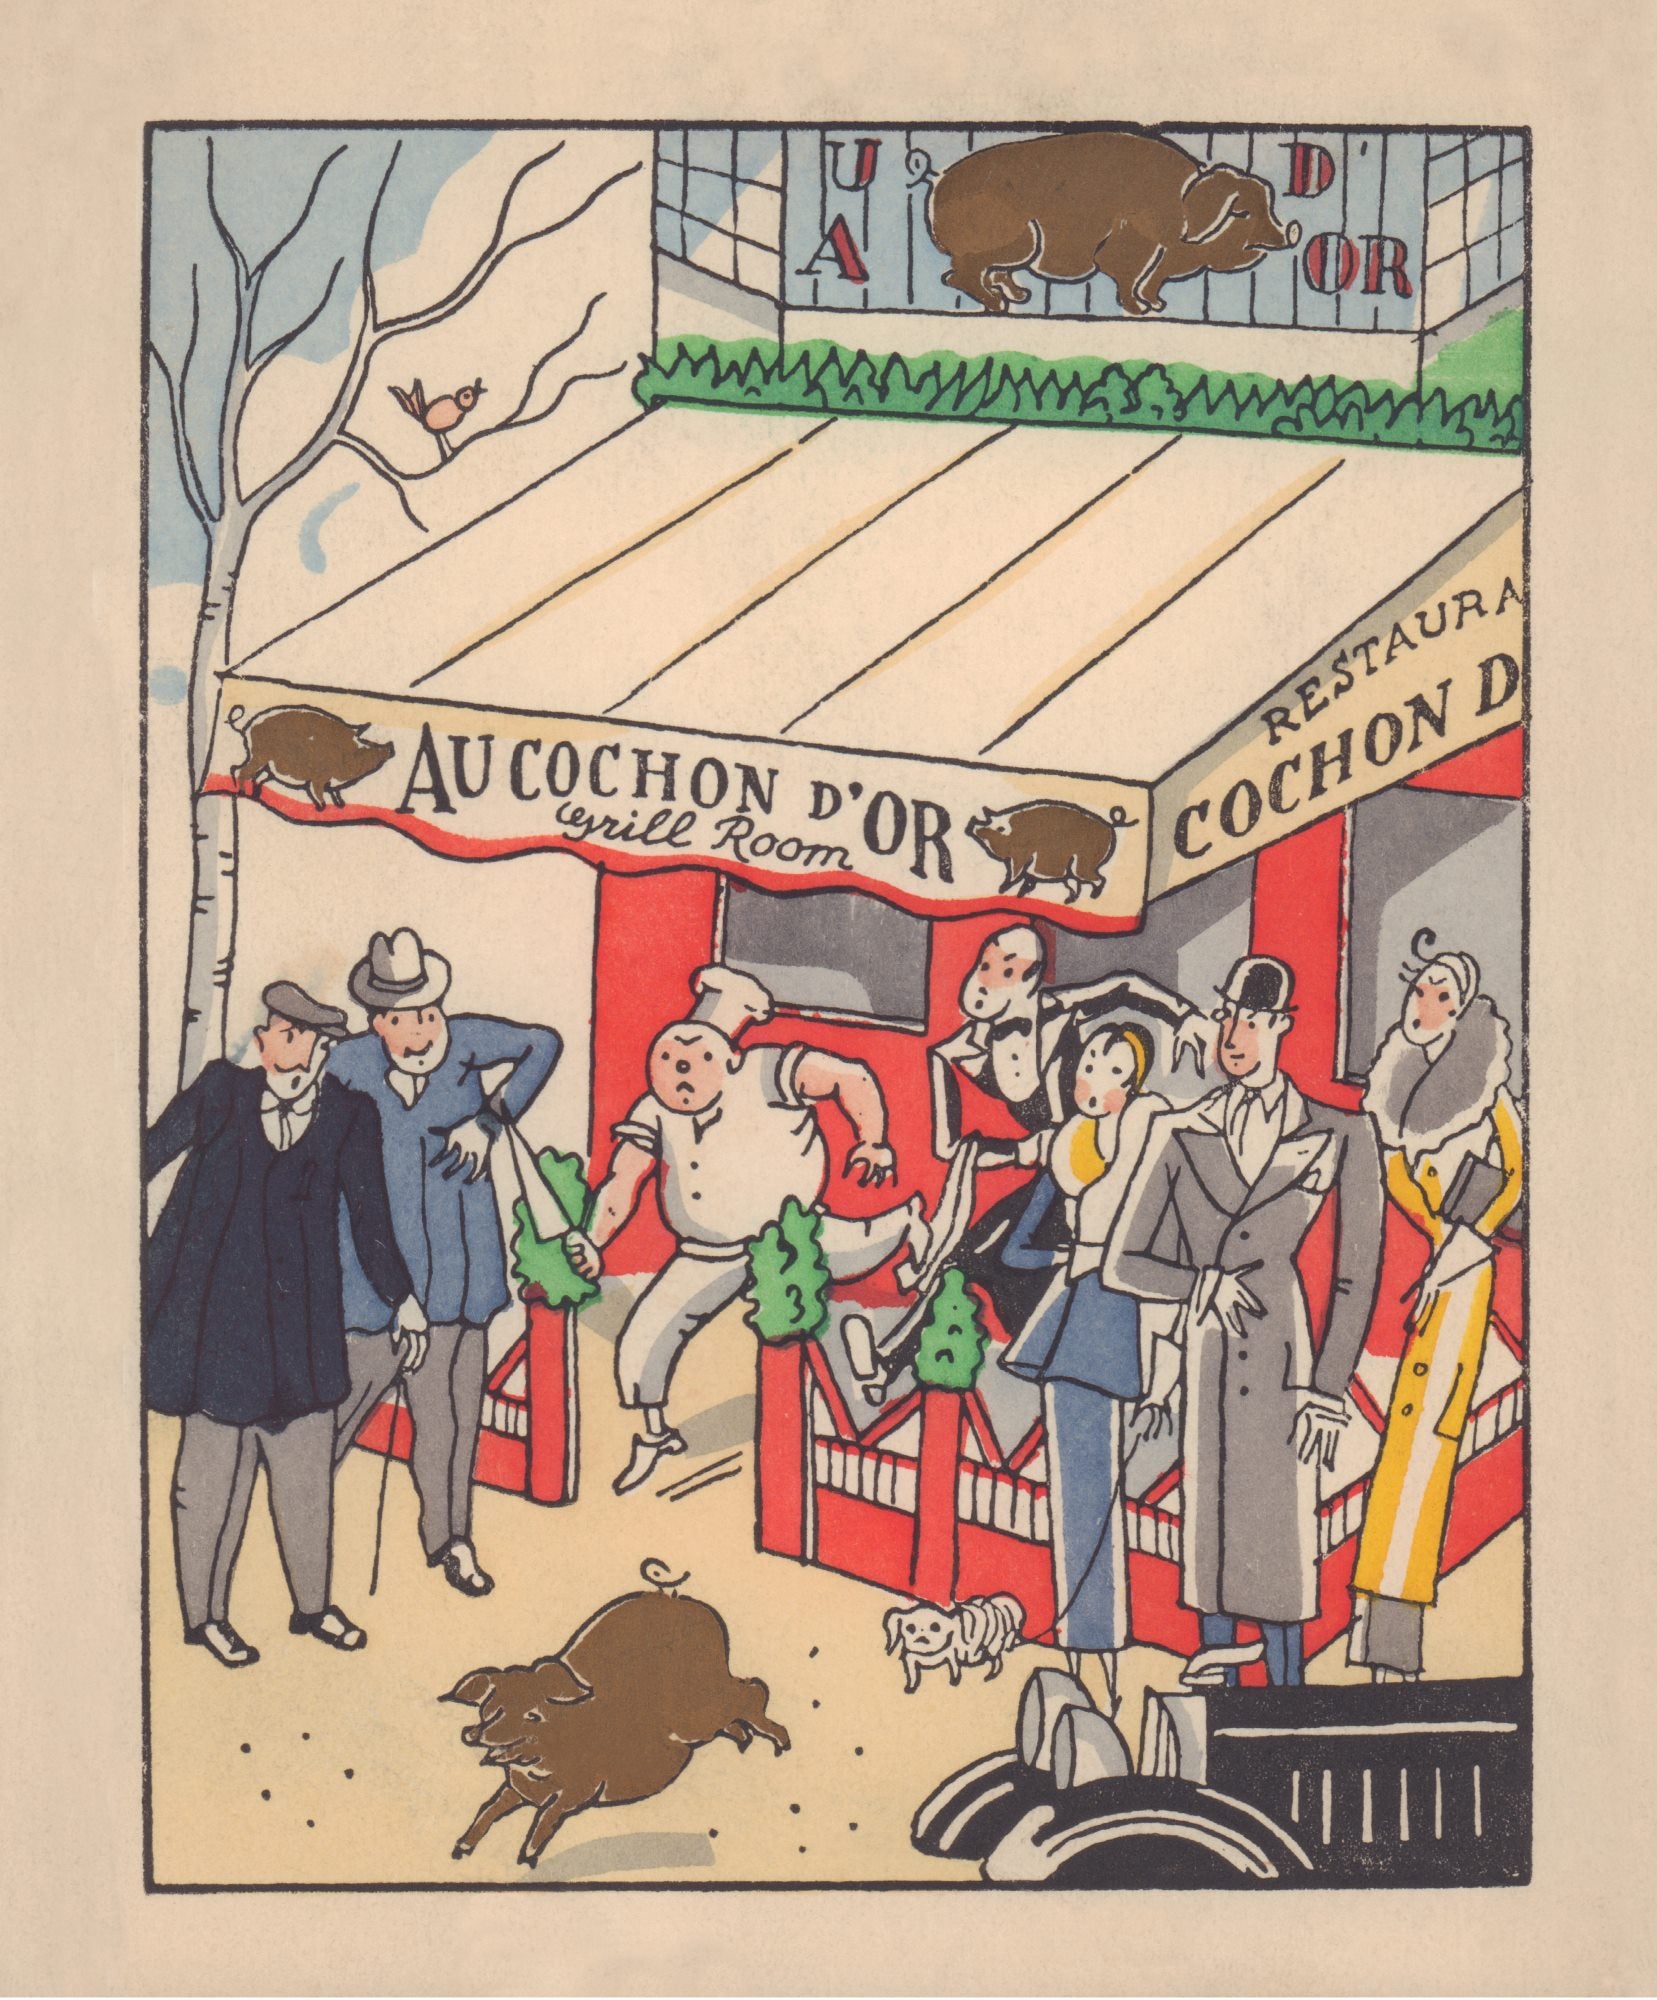 Au Cochon D'Or, Paris 1934 Menu Art